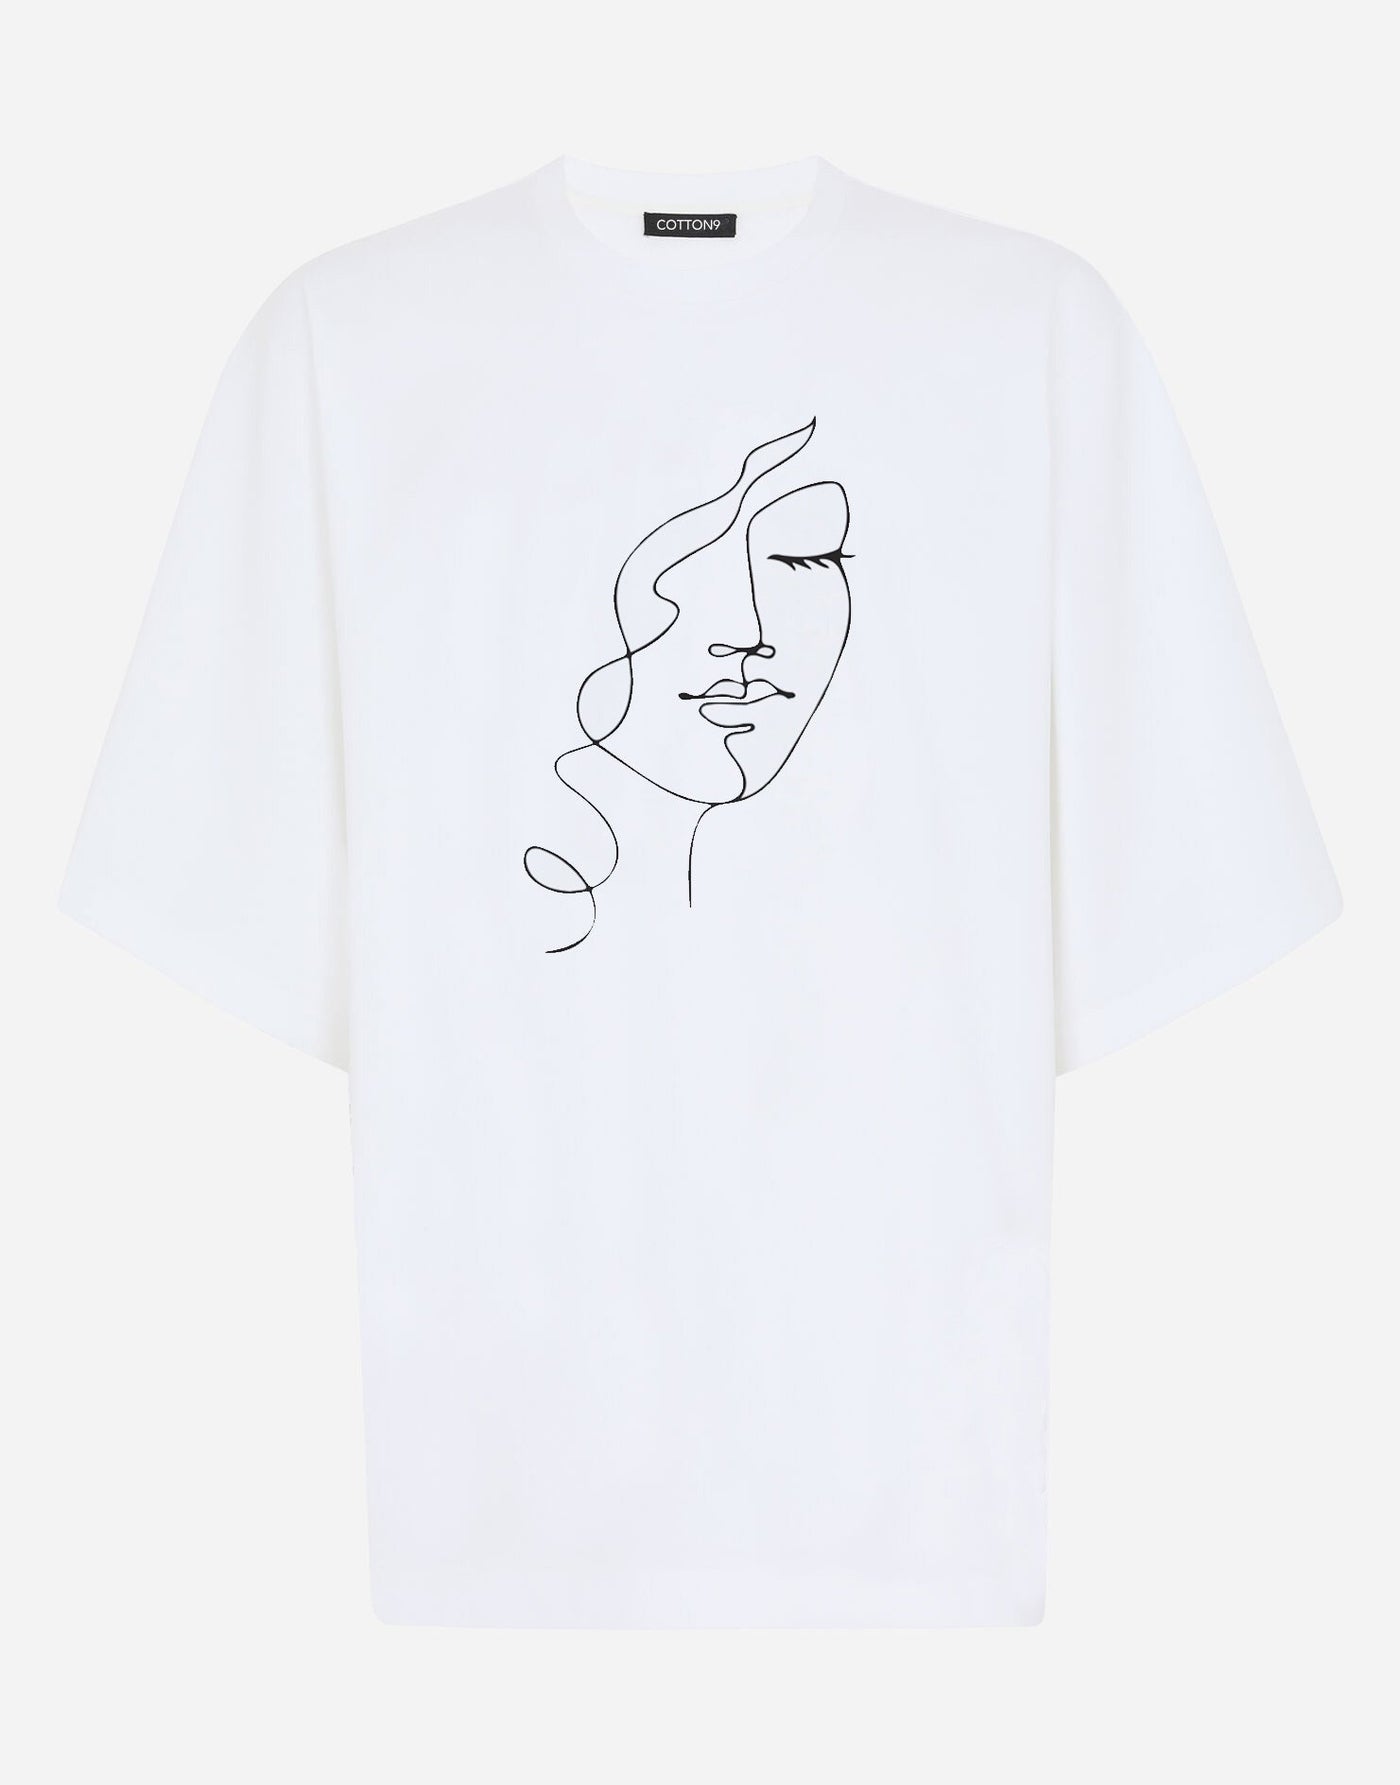 Graphic Women Face Premium Cotton T-shirt - EUG FASHION EugFashion 